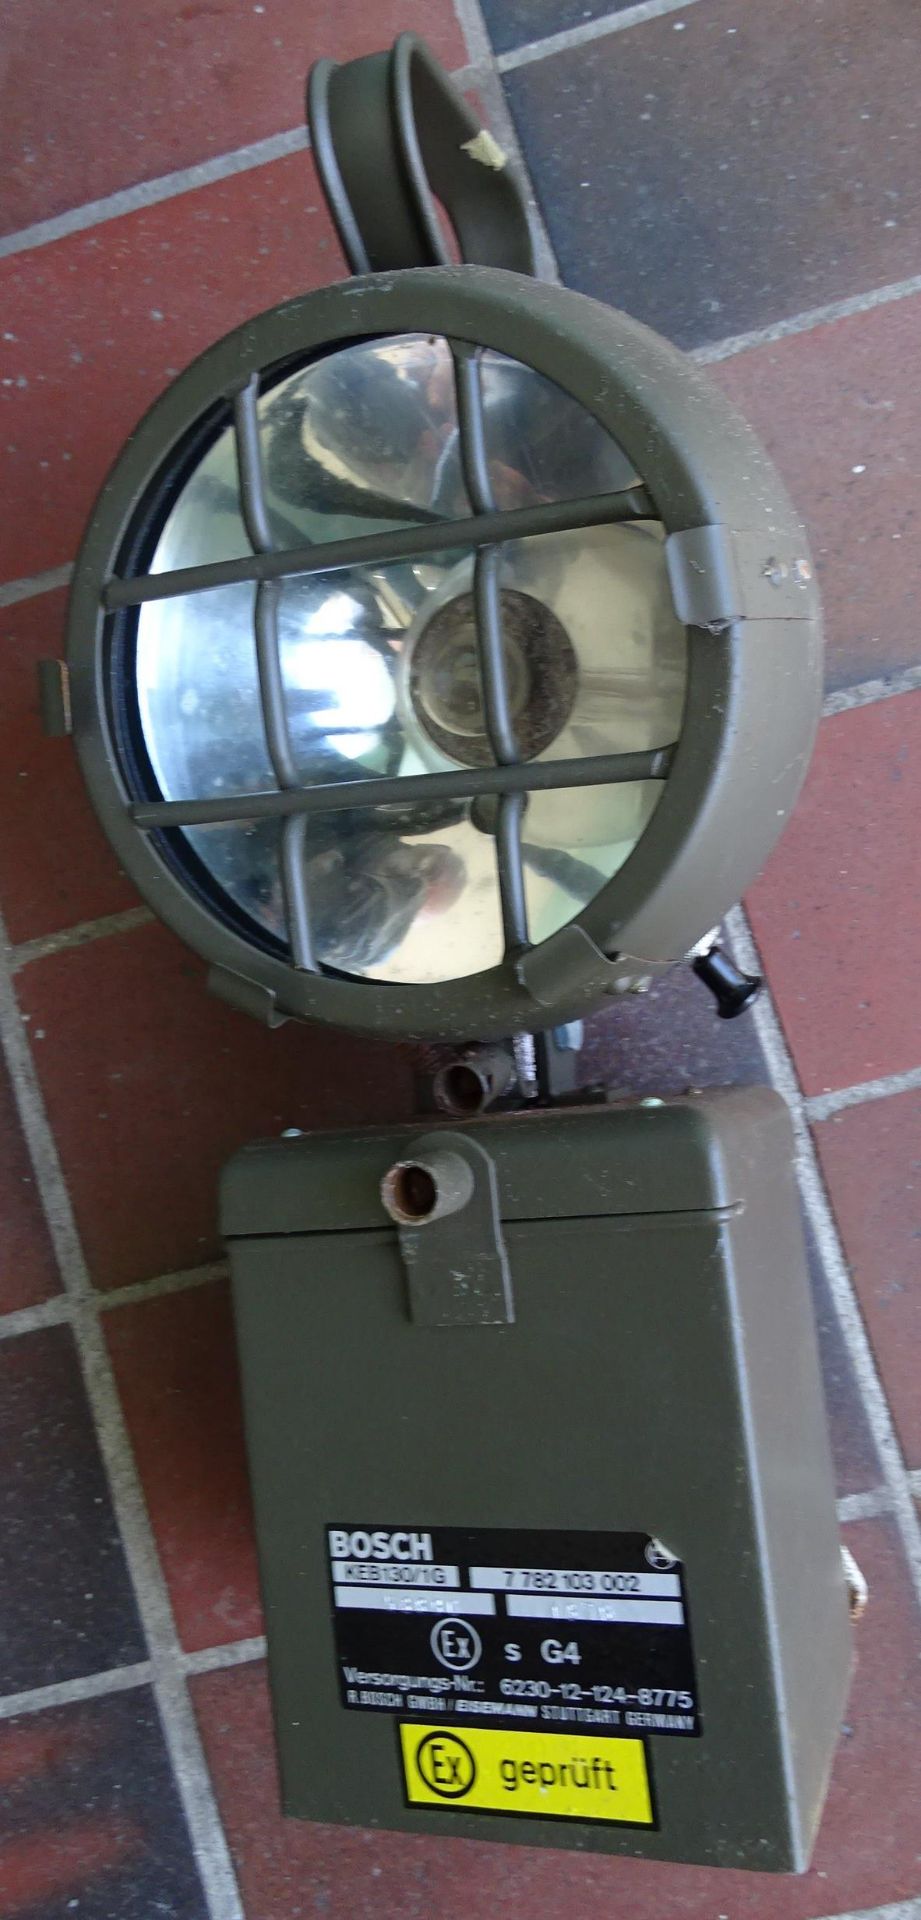 Bundeswehr Handlampe G4 in orig. Kasten, 1978, Funktion nicht geprüft, 41x30x20 cm